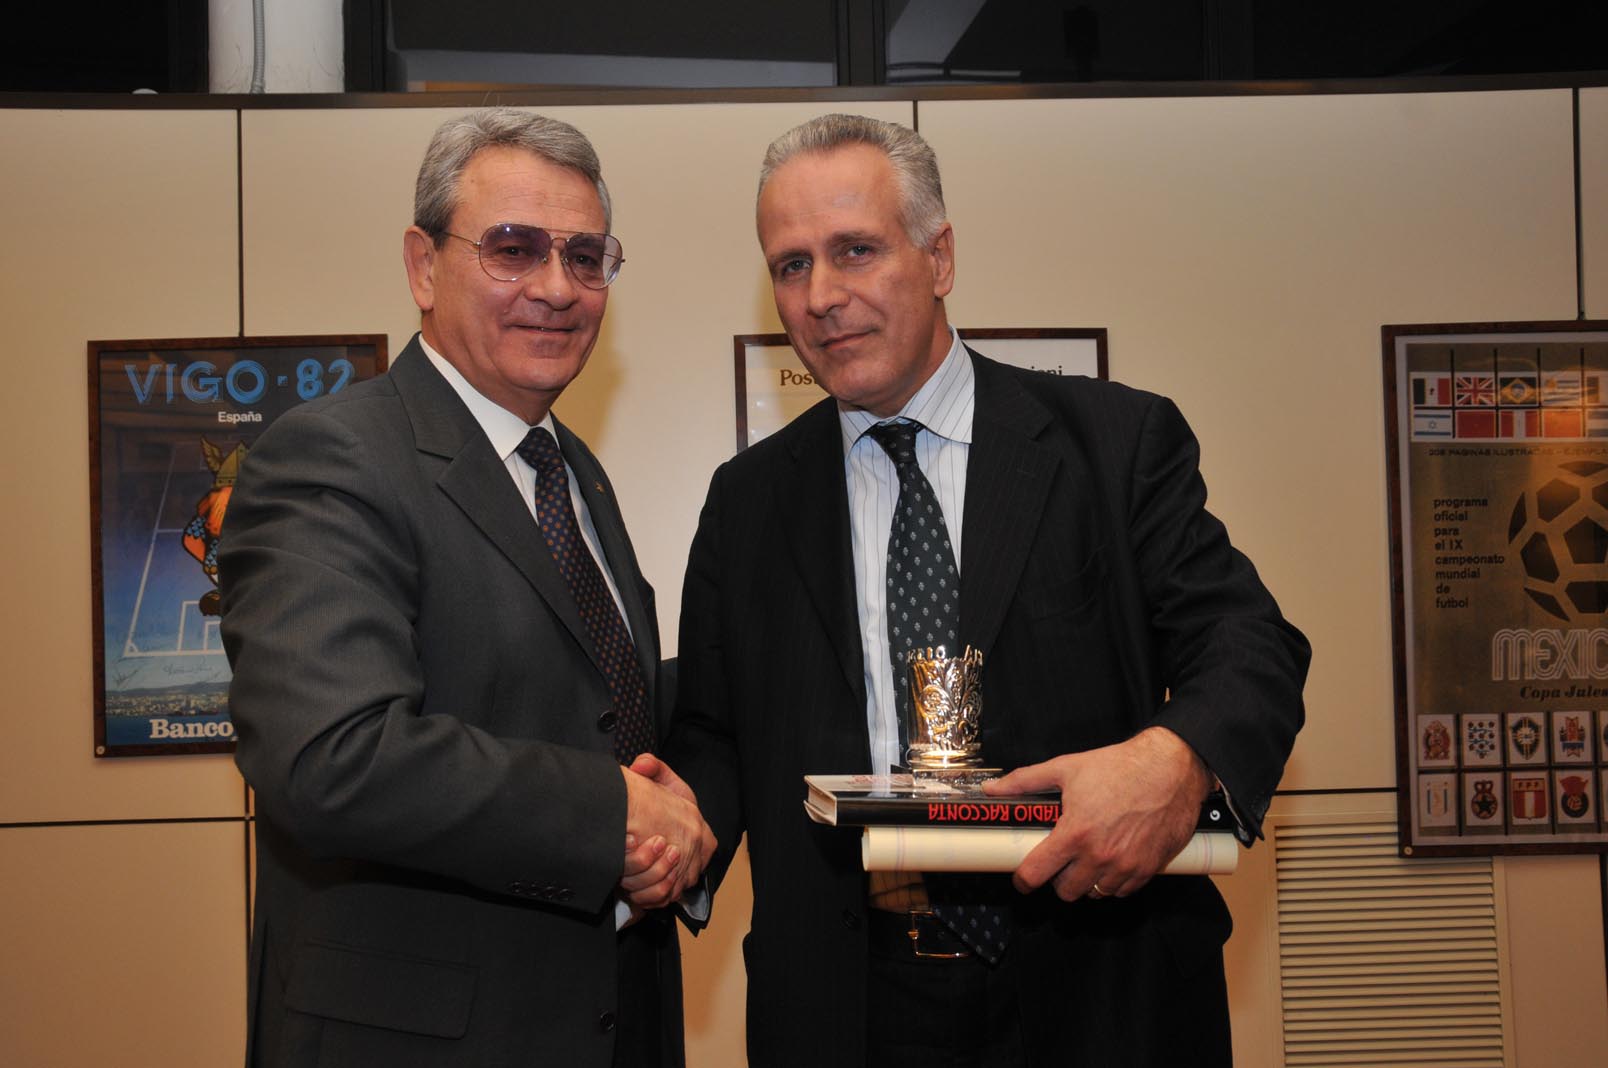 Il Presidente di Giglio Amico consegna il premio  "Amico di Giglio Amico" ad Eugenio Giani